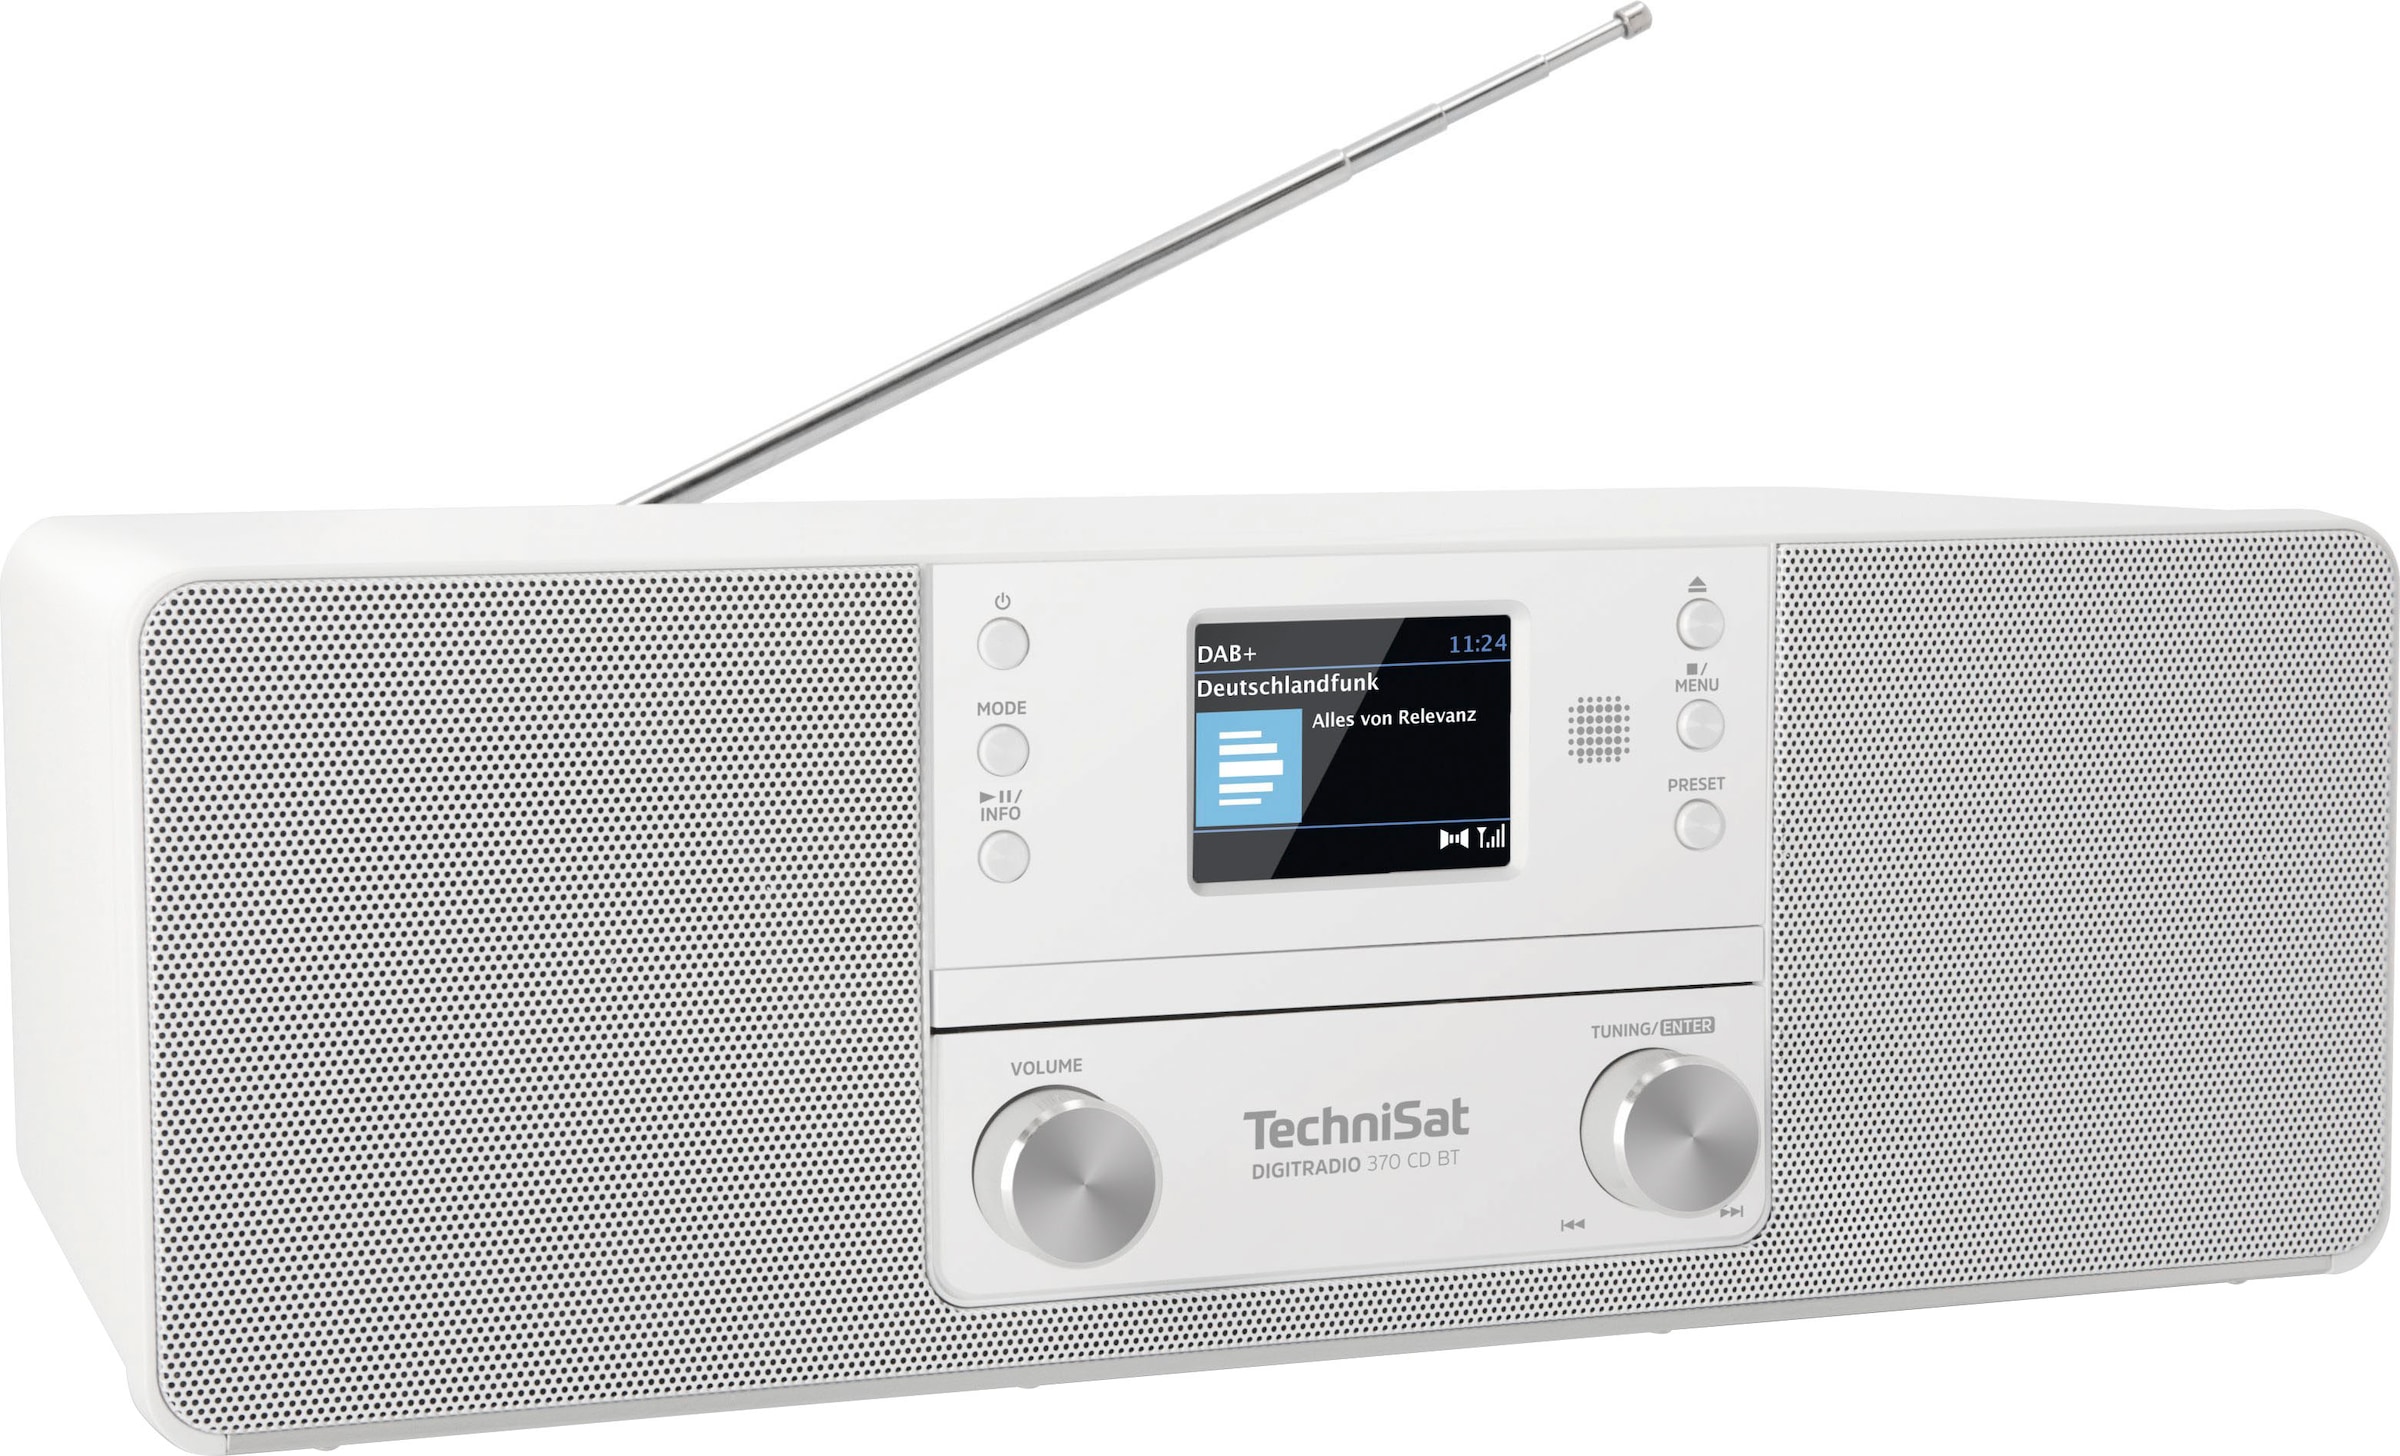 jetzt CD (DAB+) OTTO 10 (Bluetooth UKW mit »DIGITRADIO kaufen RDS Digitalradio BT«, TechniSat -Digitalradio bei W) (DAB+) 370